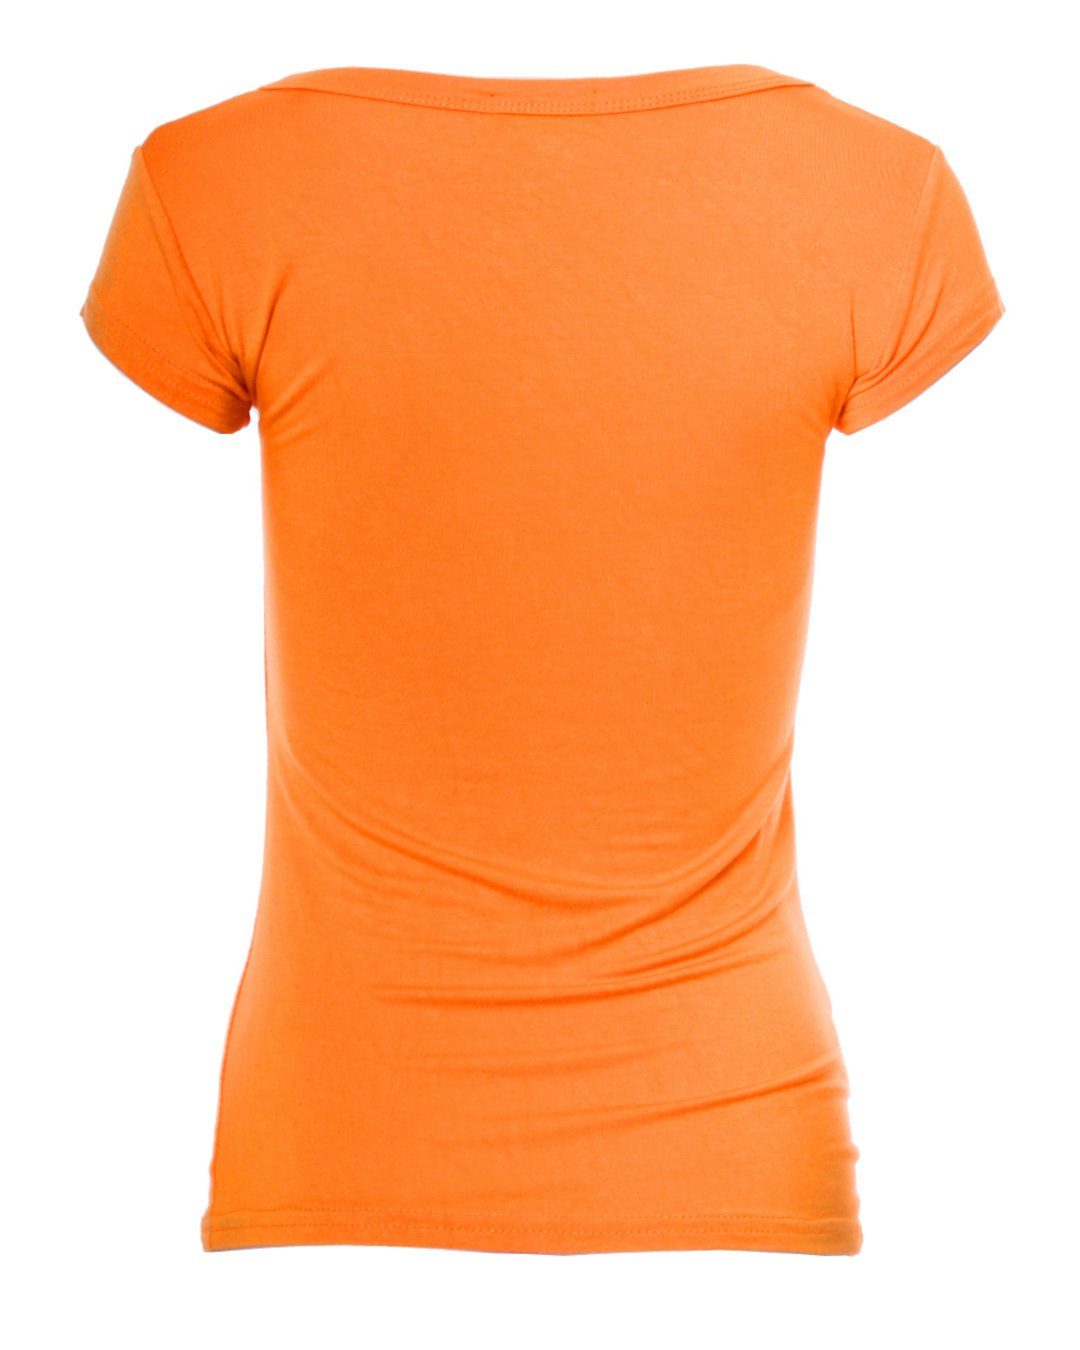 Muse T-Shirt Basic Fit T-Shirt Kurzarm Skinny 1001 orange